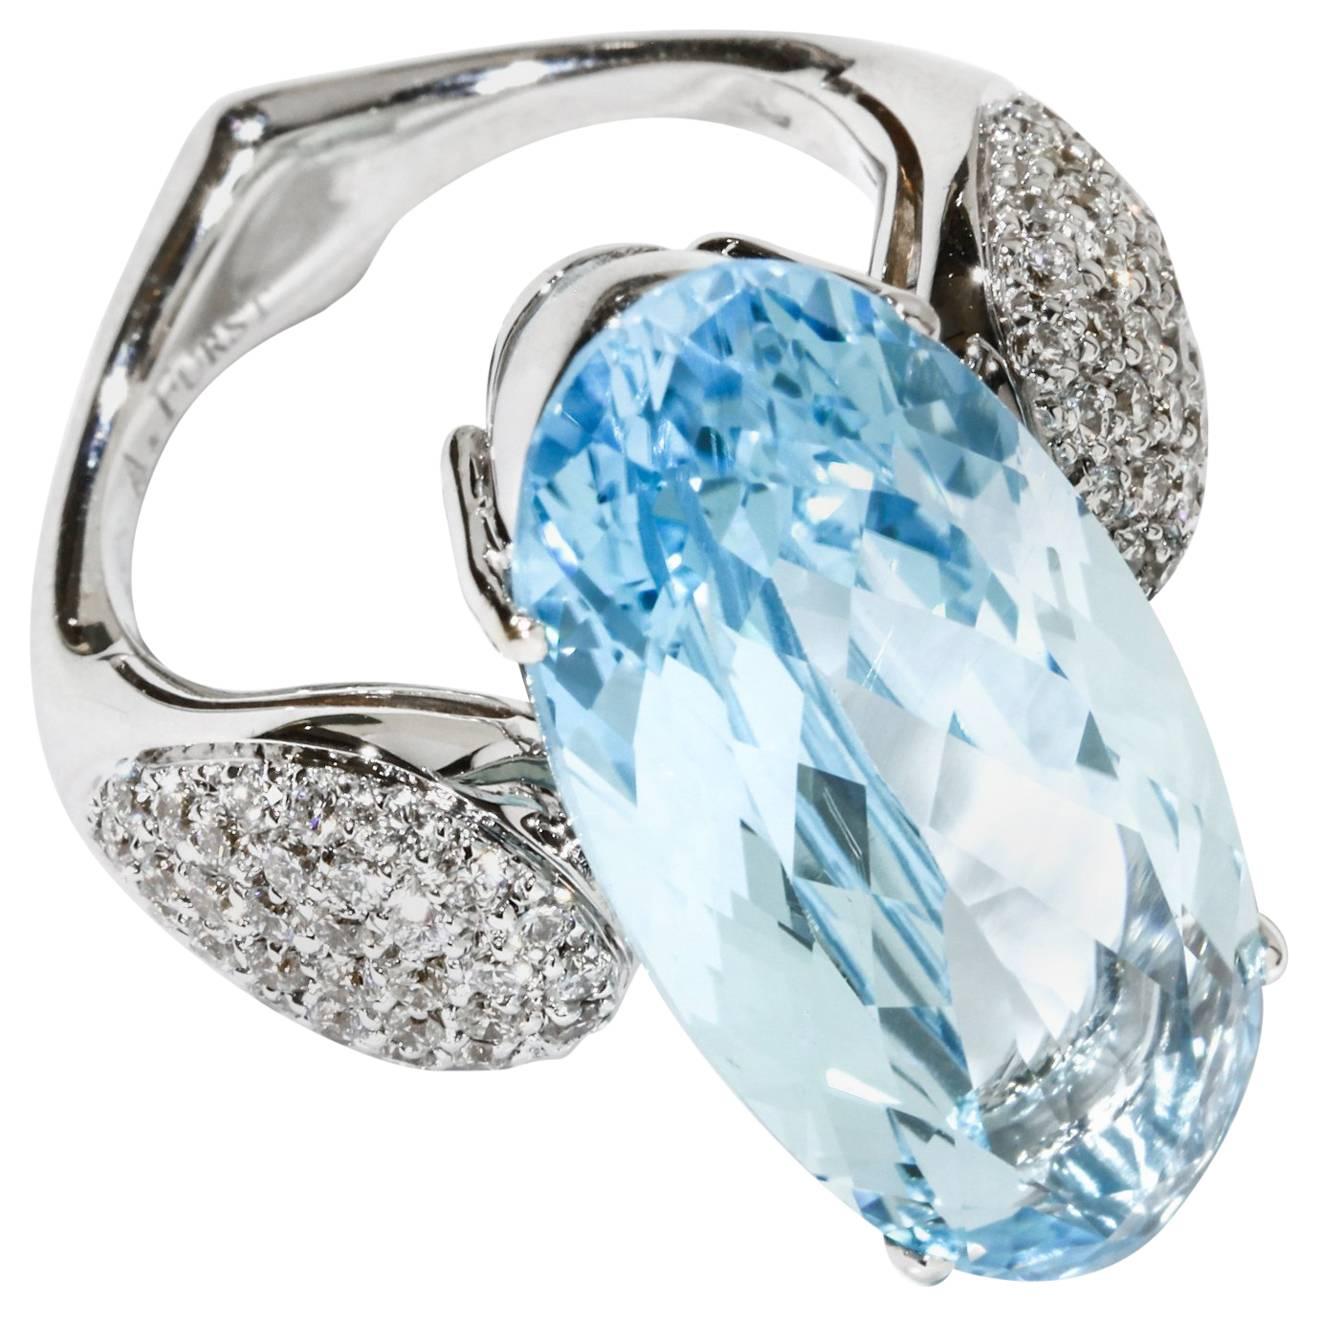 A & Furst Fleur-de-Lys Cocktail Ring Blue Topaz Diamonds 18 Karat White Gold For Sale